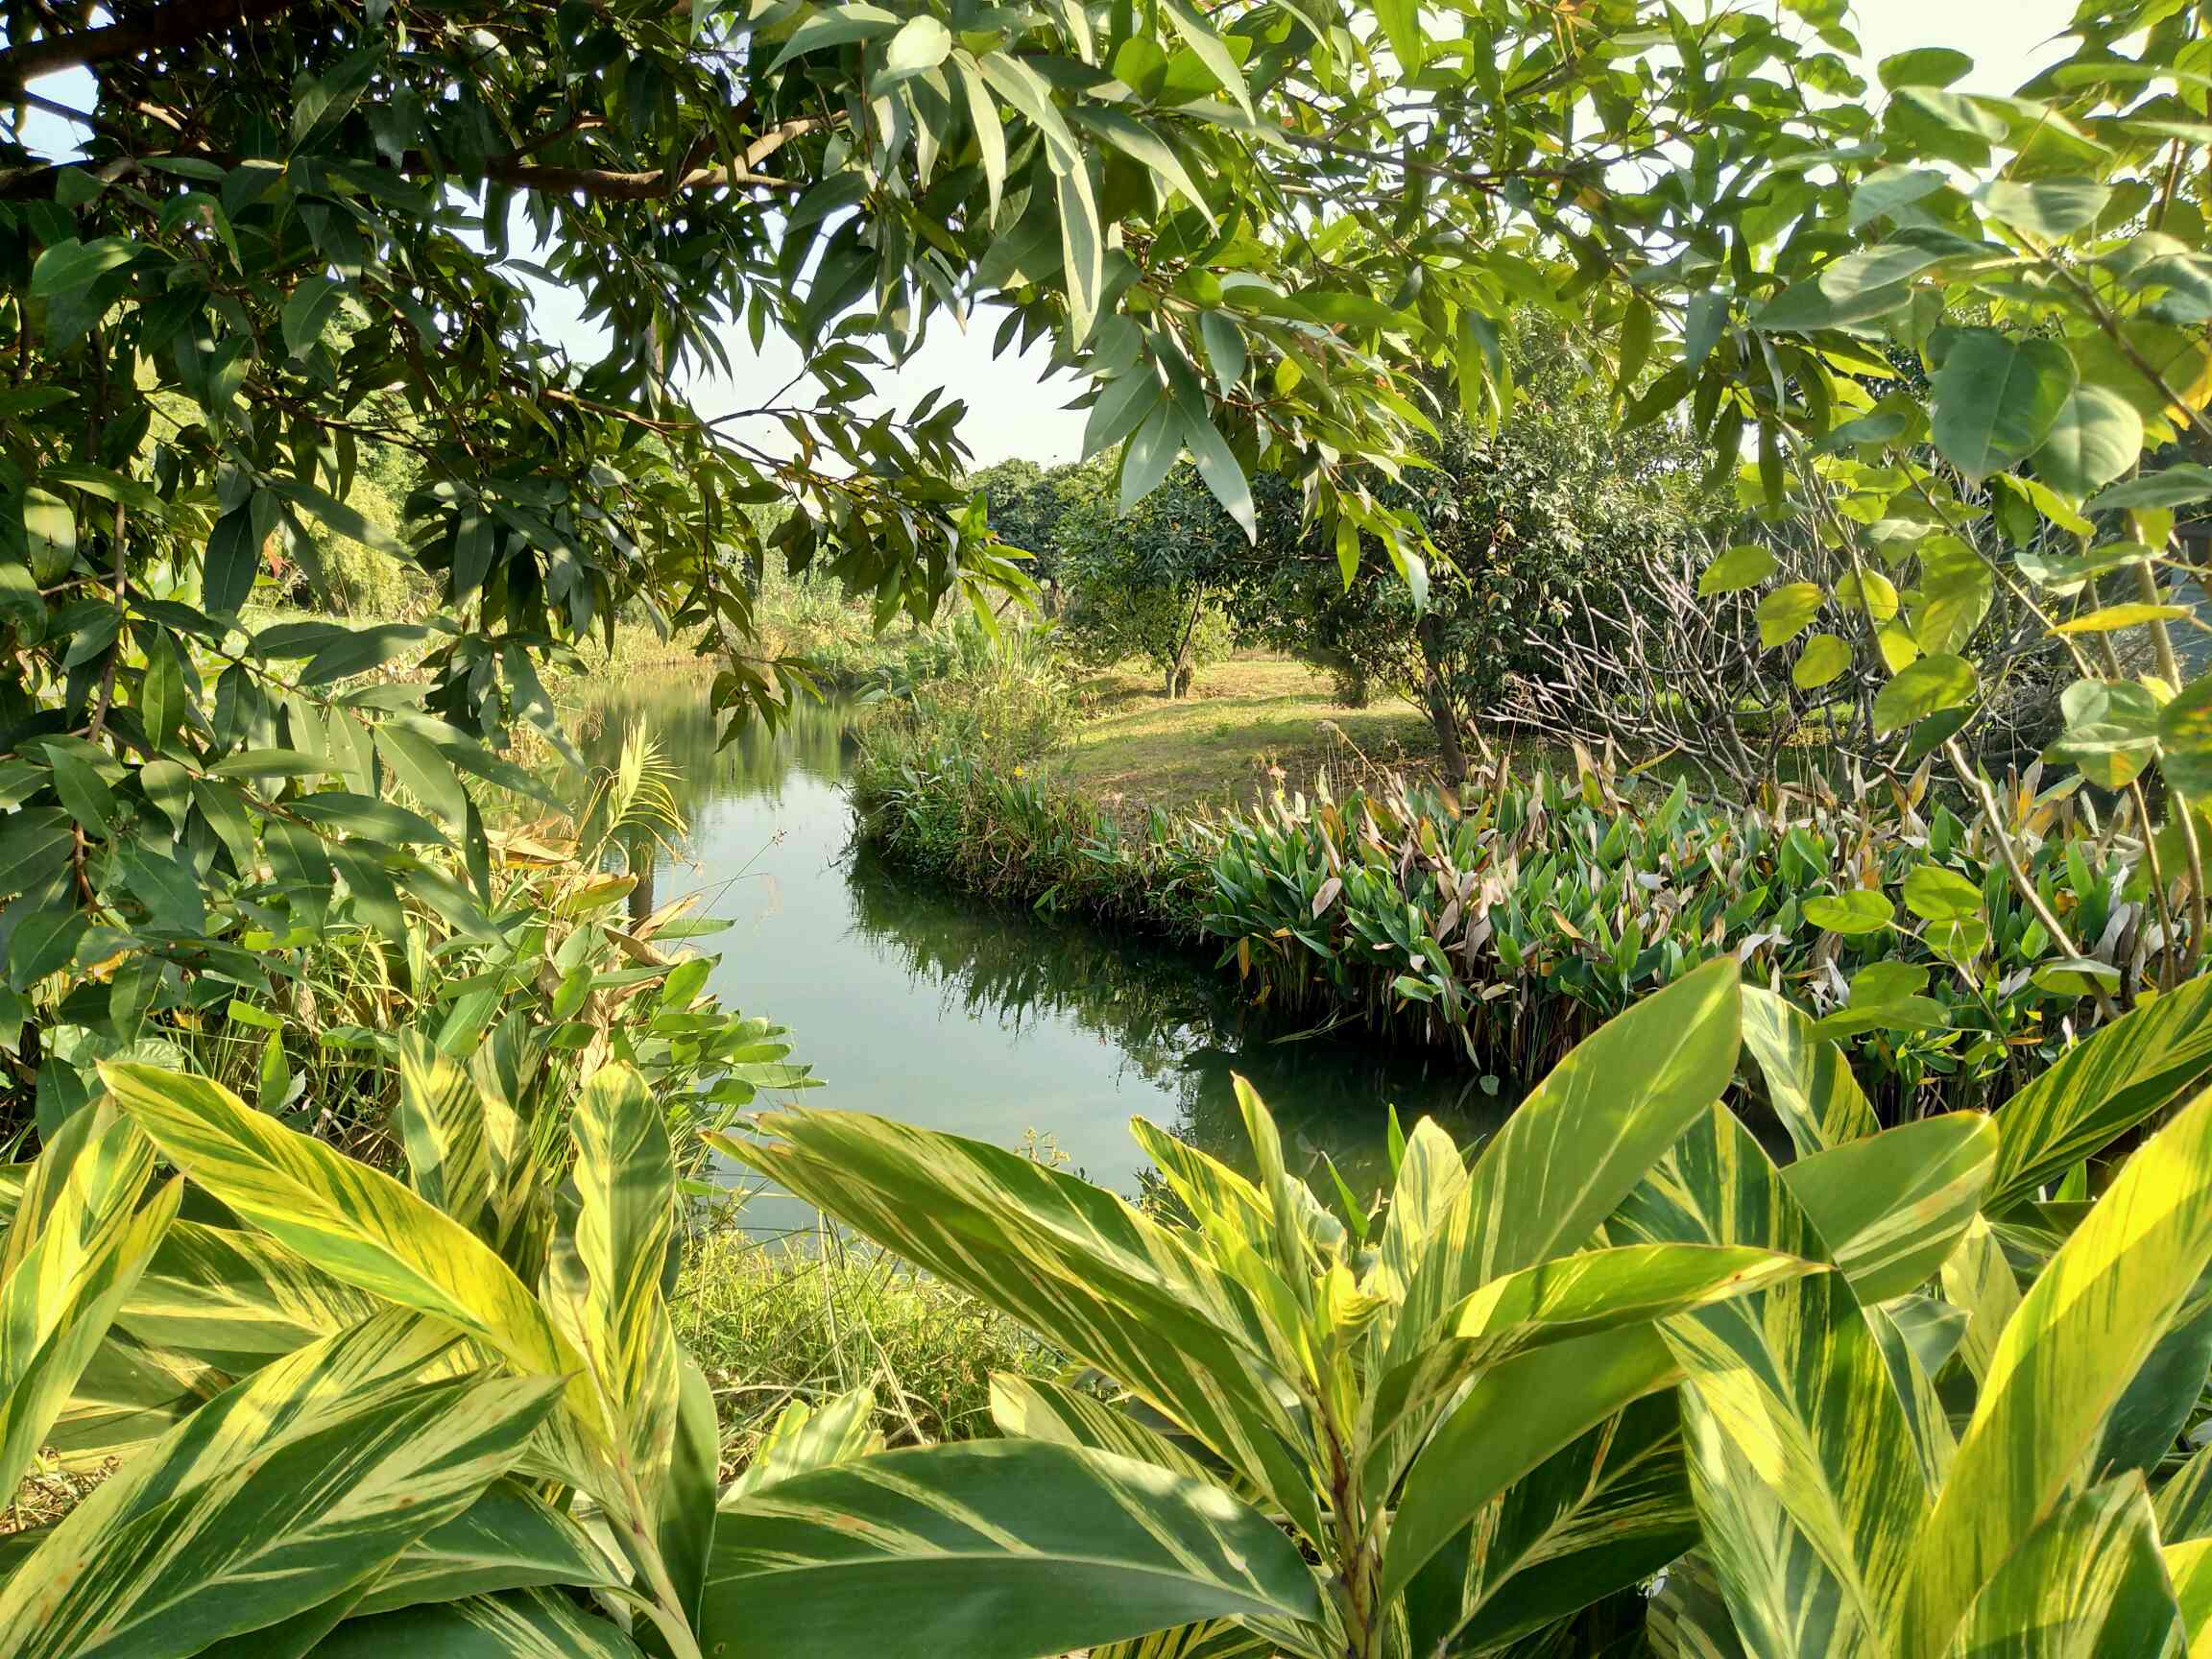 珠江三角洲植被图片